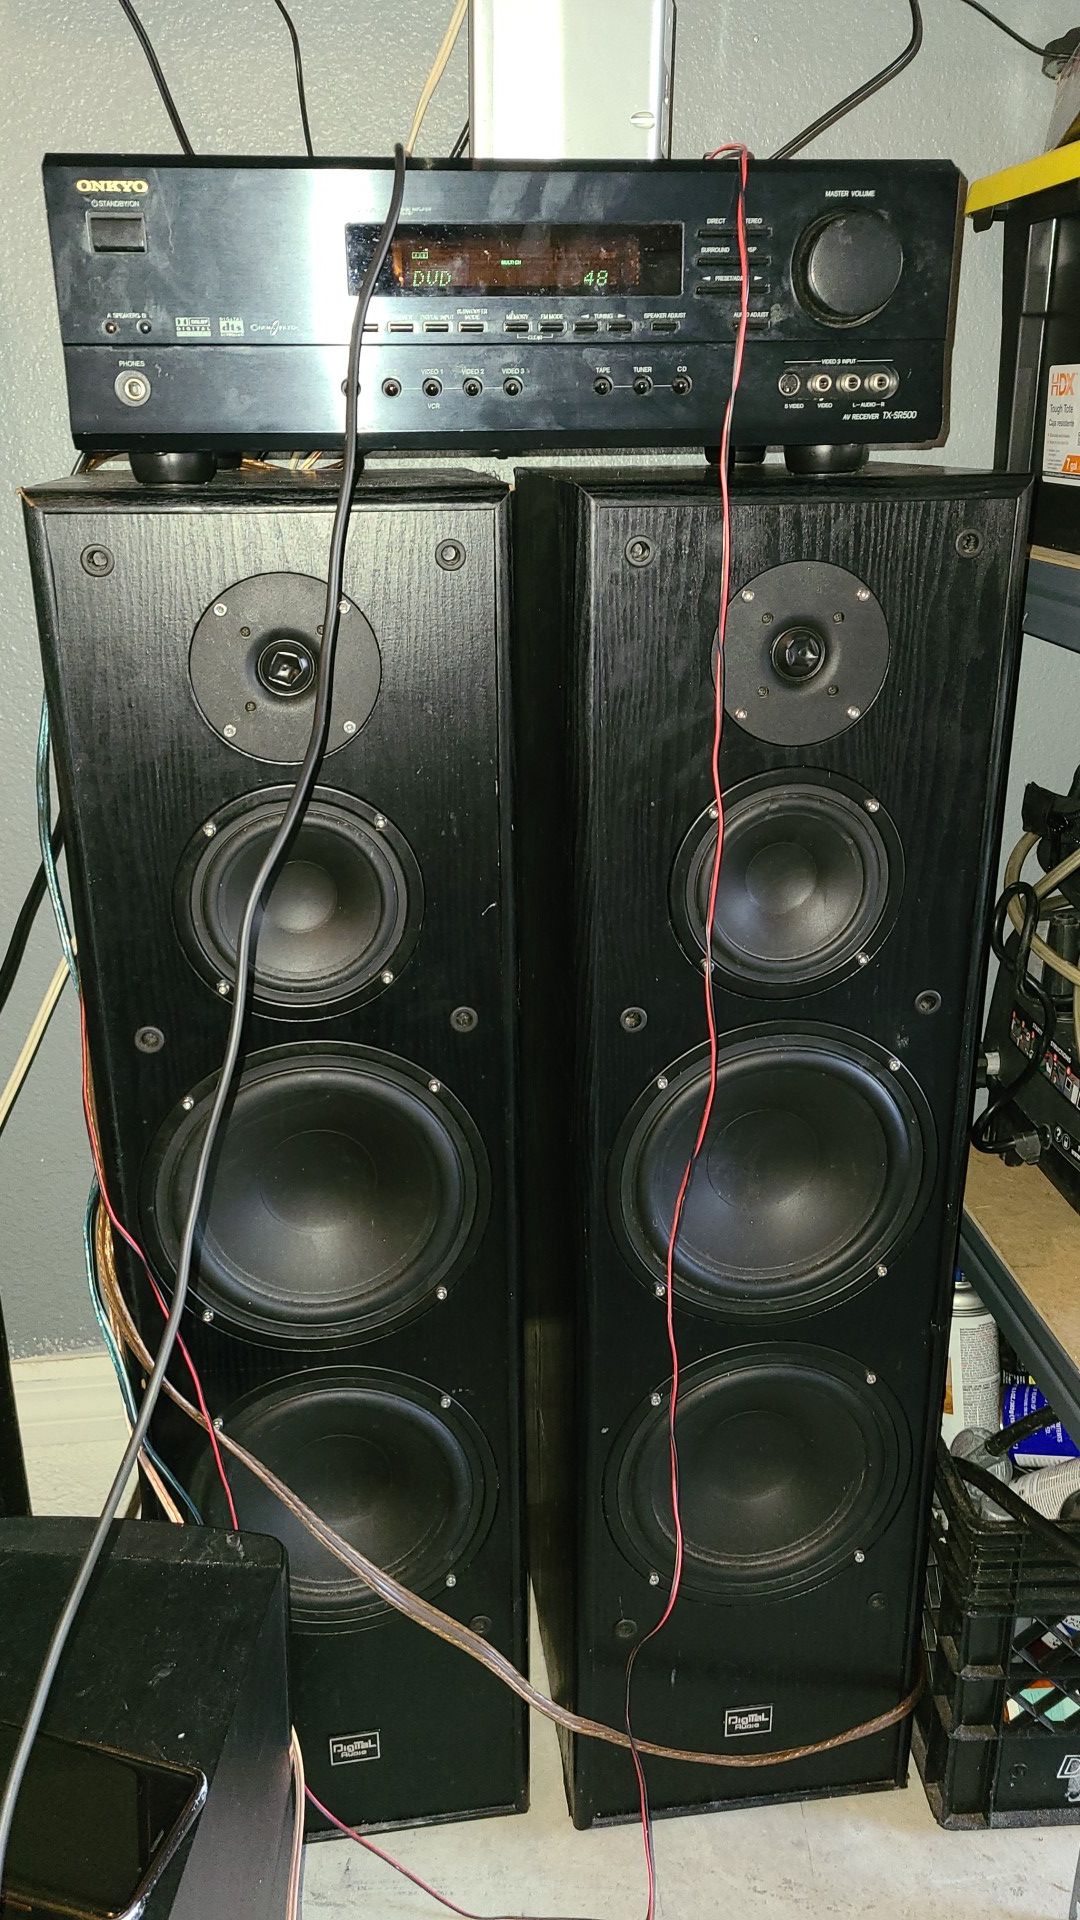 Av music receiver 2 tower speakers